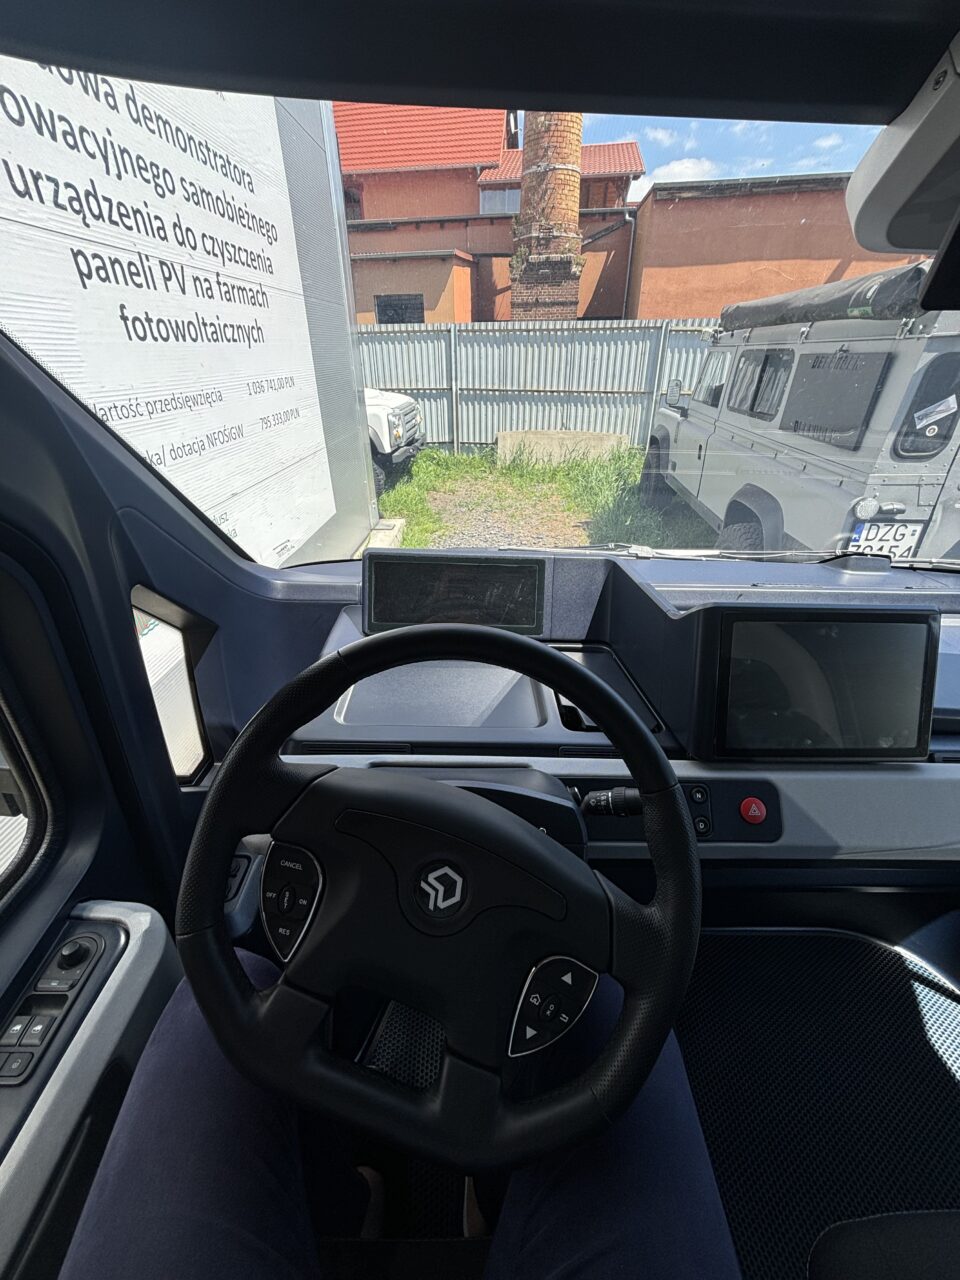 Widok wnętrza samochodu elektrycznego z kokpitu kierowcy z widoczną kierownicą i ekranami, przez przednią szybę widać zaparkowane samochody i budynek.